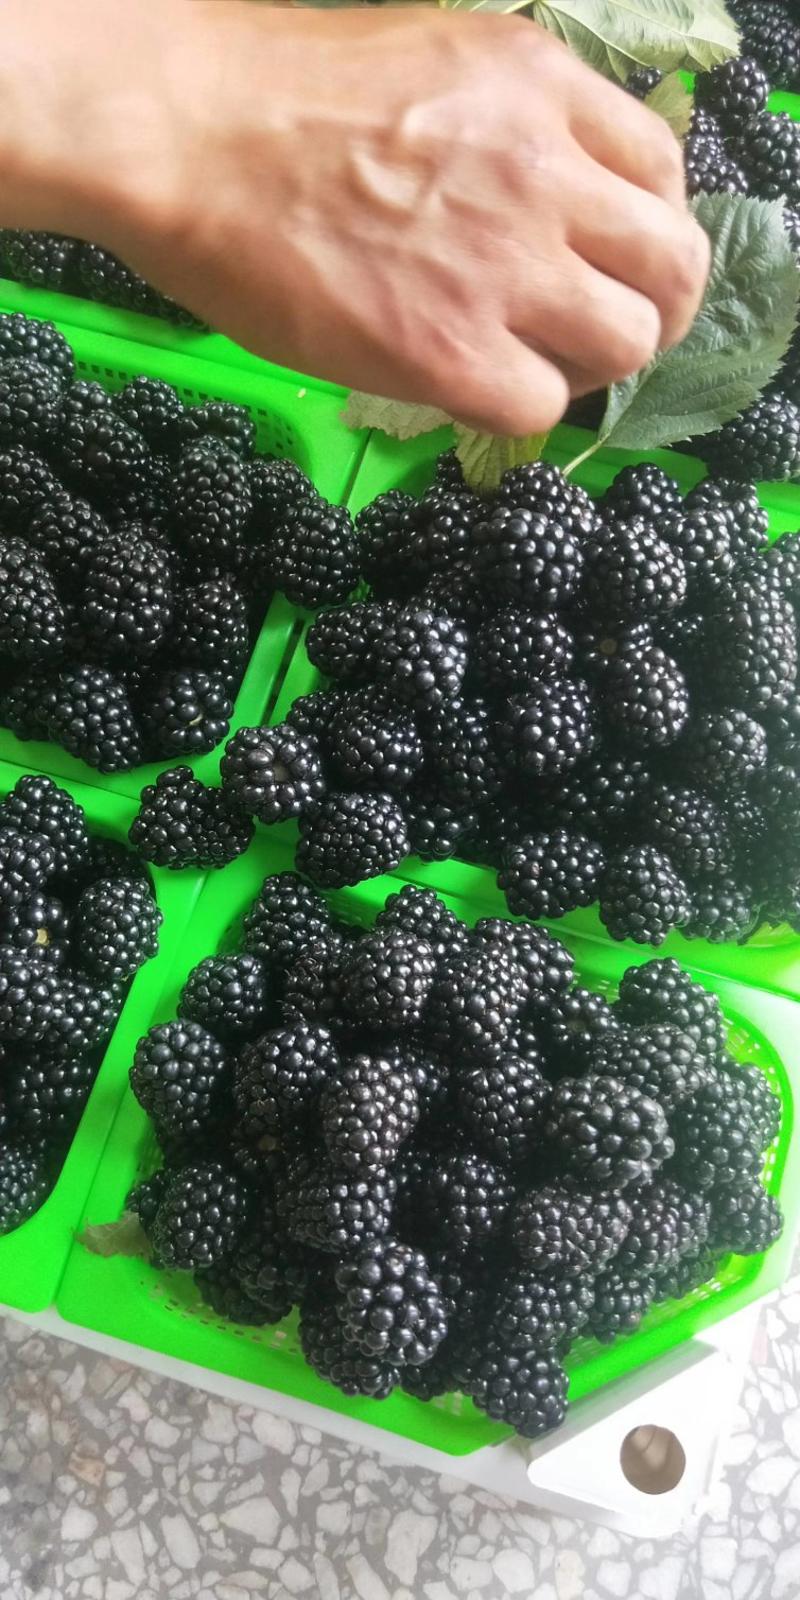 黑莓鲜果